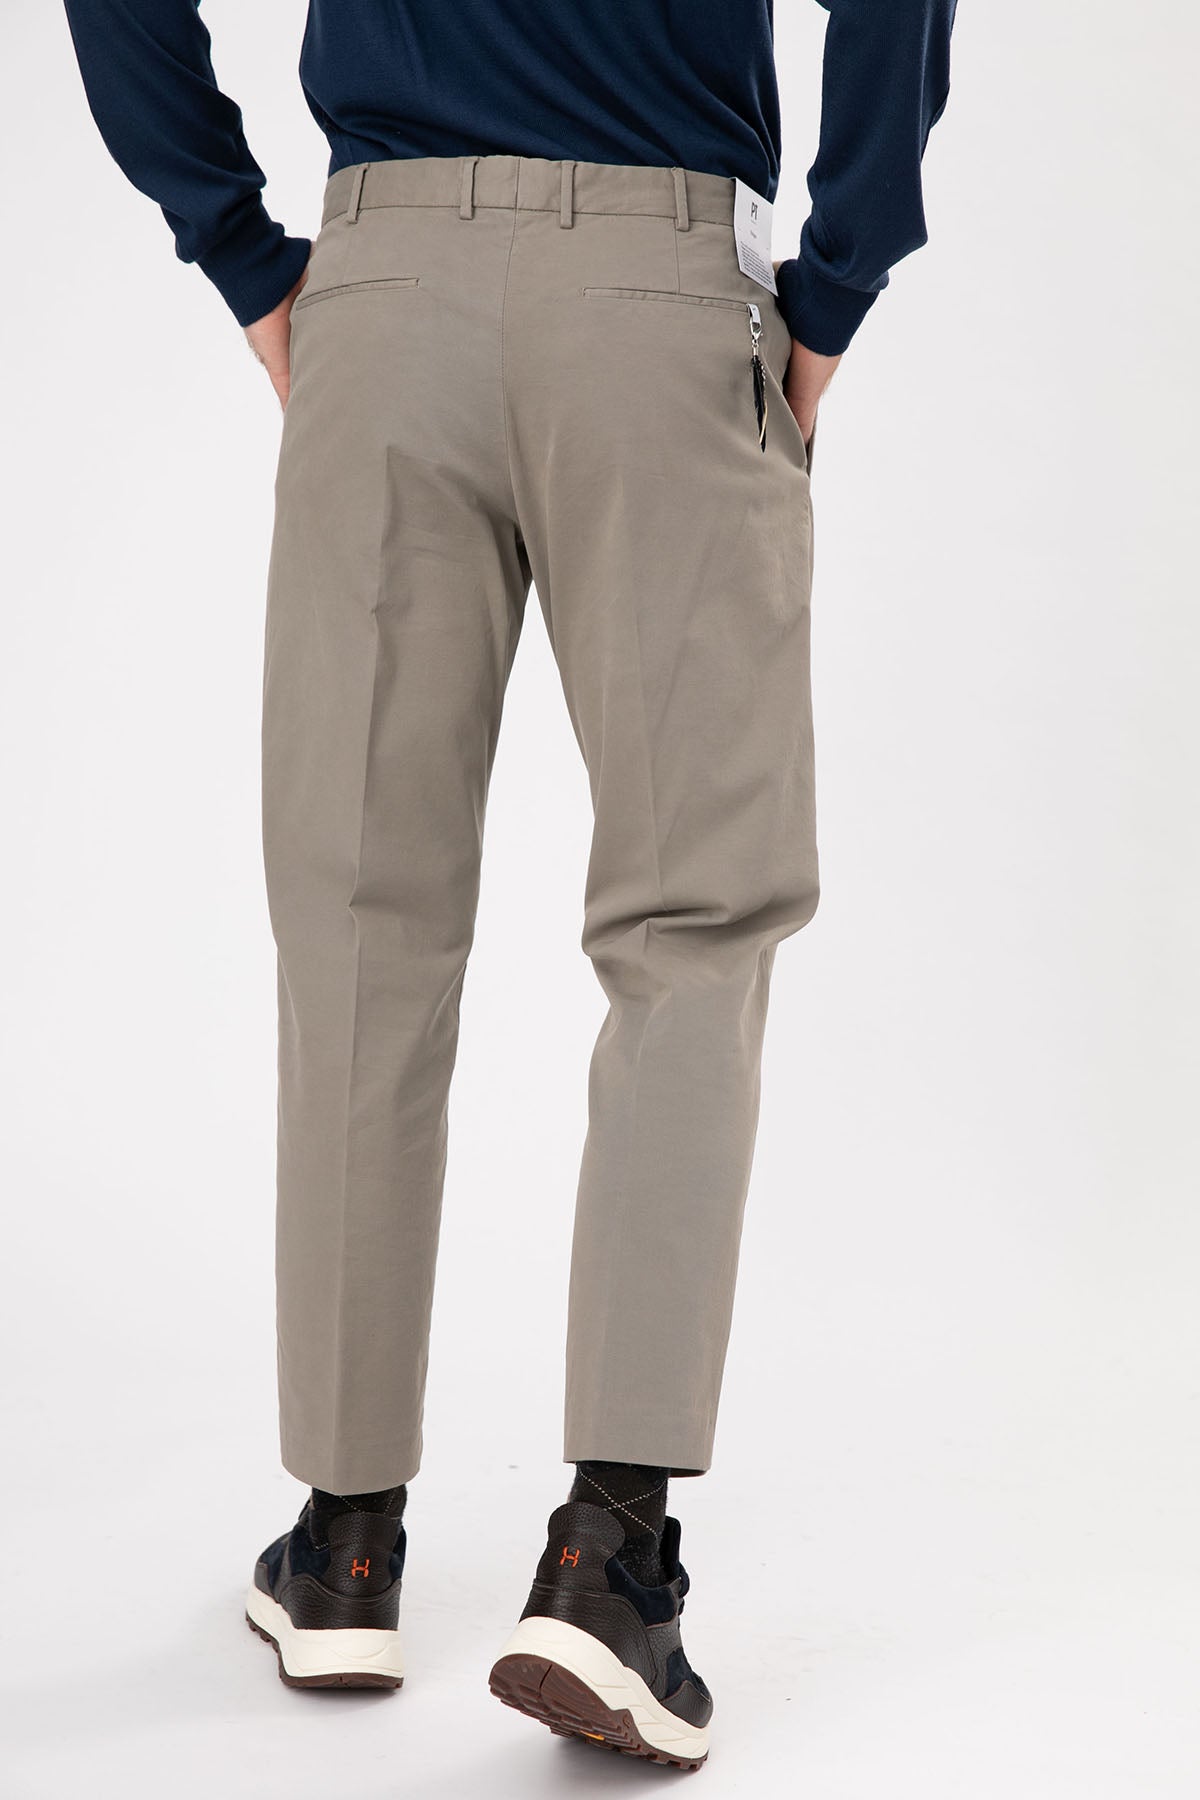 Pantaloni Torino Rebel Fit Edge Yandan Cepli Pantolon-Libas Trendy Fashion Store